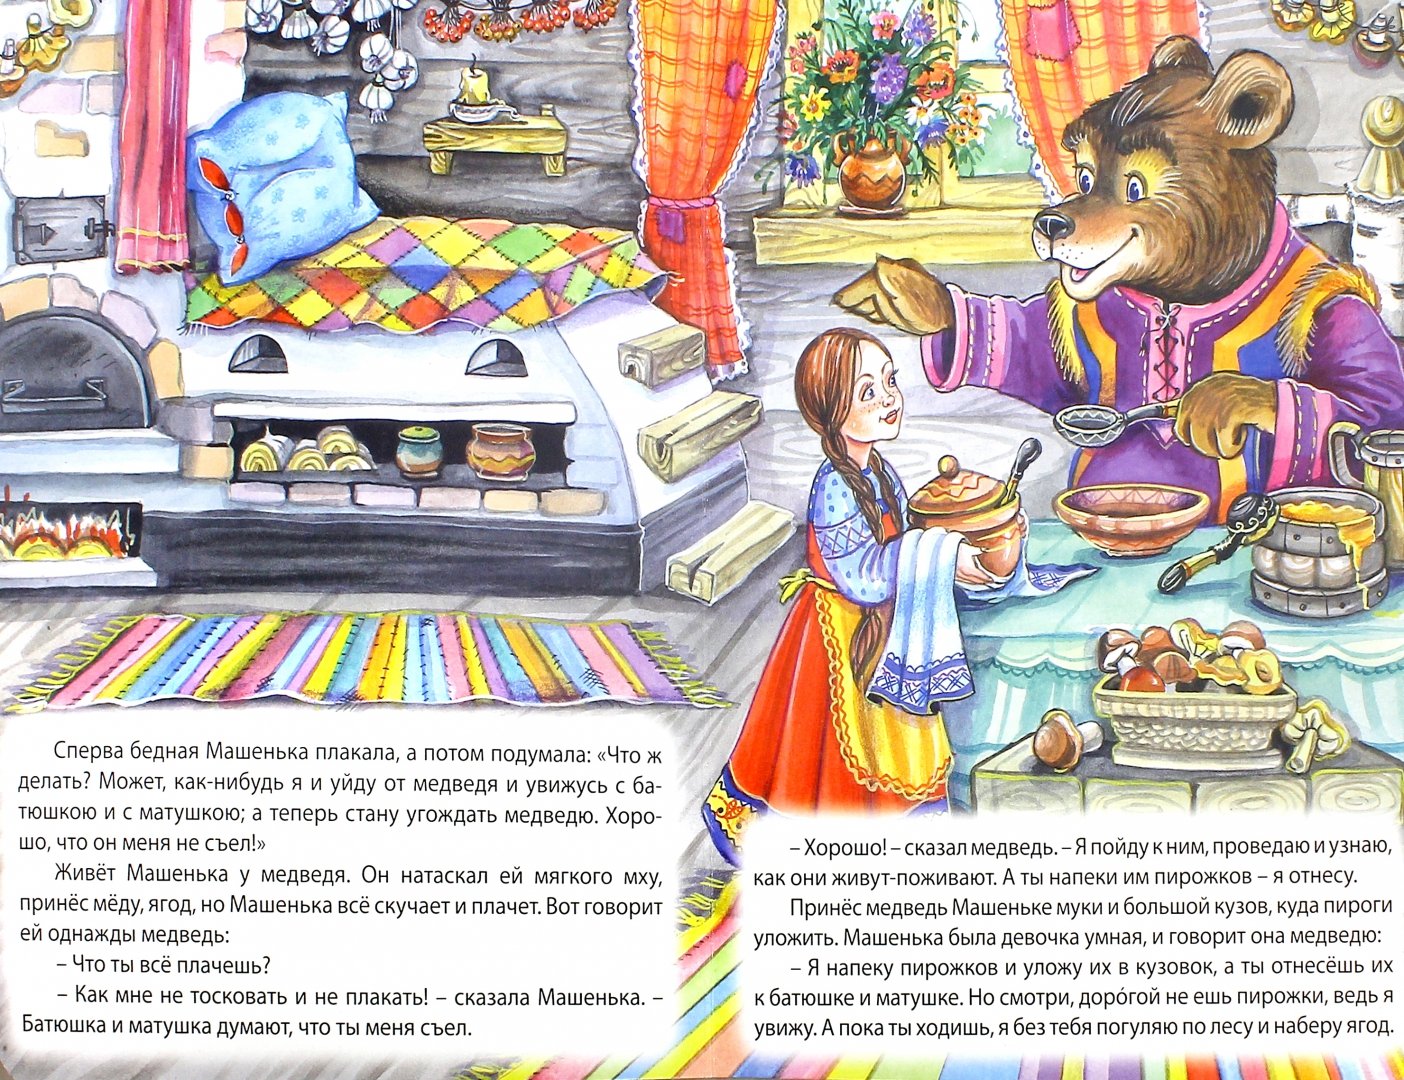 Иллюстрация 1 из 6 для Машенька и медведь | Лабиринт - книги. Источник: Лабиринт